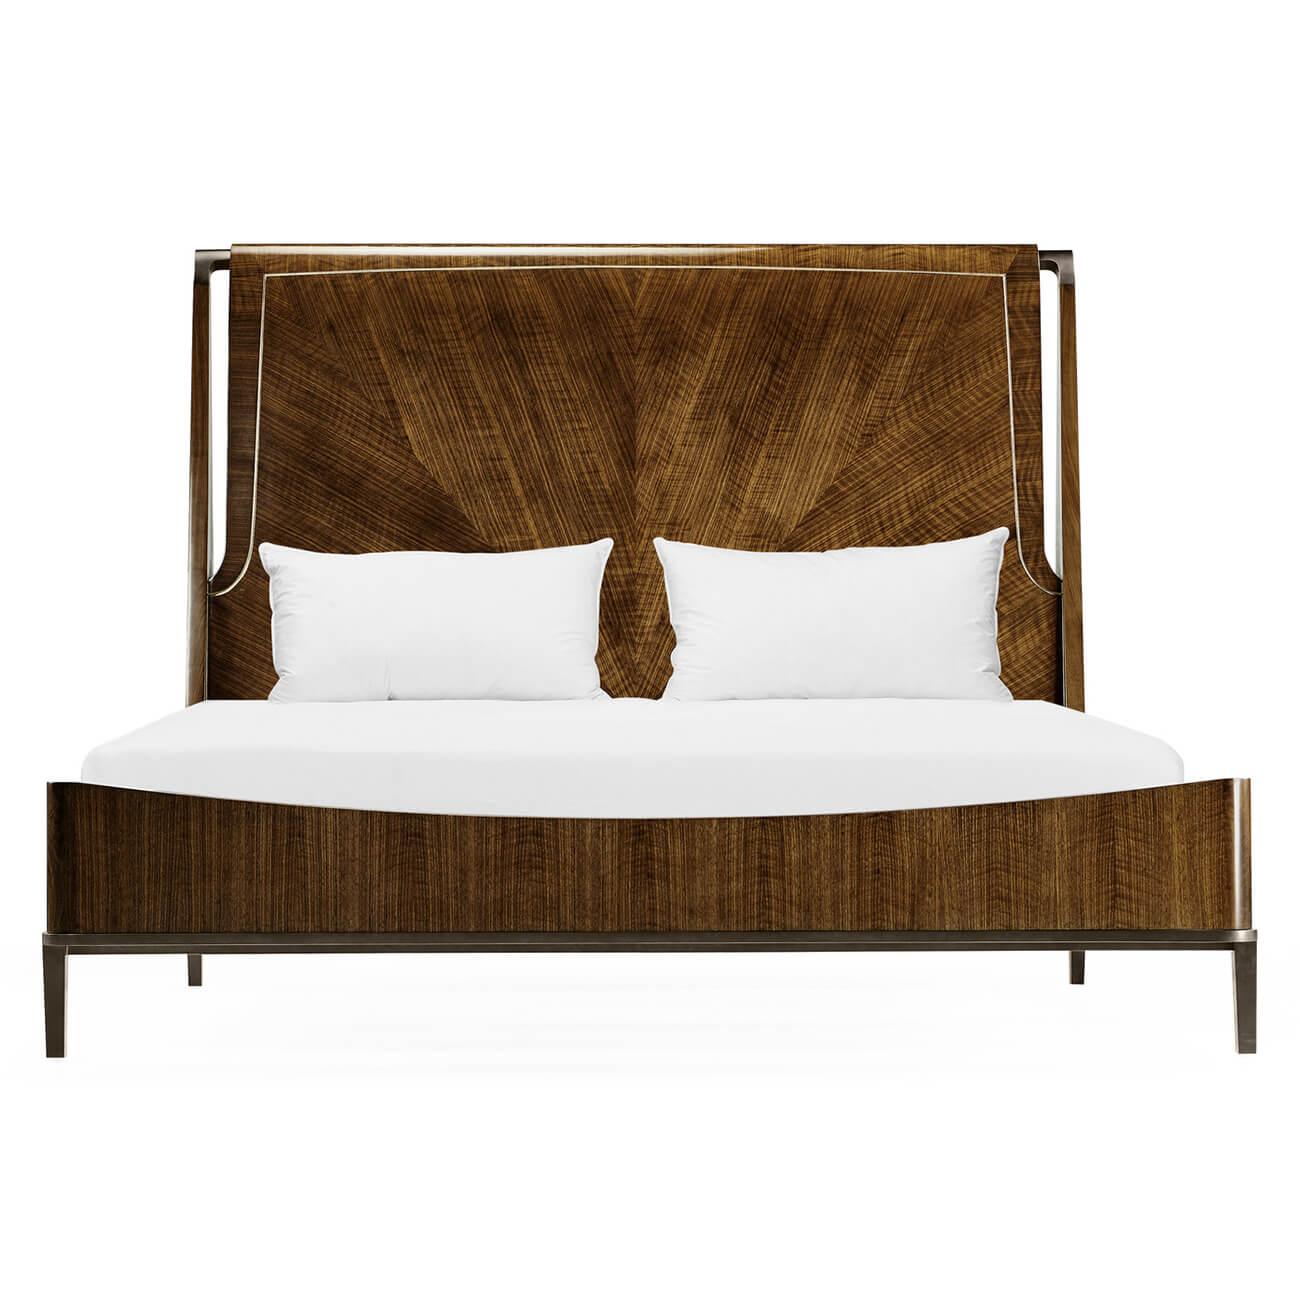 Ein gevierteltes Kingsize-Bett aus Nussbaumholz im Stil der Jahrhundertmitte mit einem gepolsterten Kopfteil und antiken Messingbeschlägen und -füßen.

Abmessungen: 82 1/4